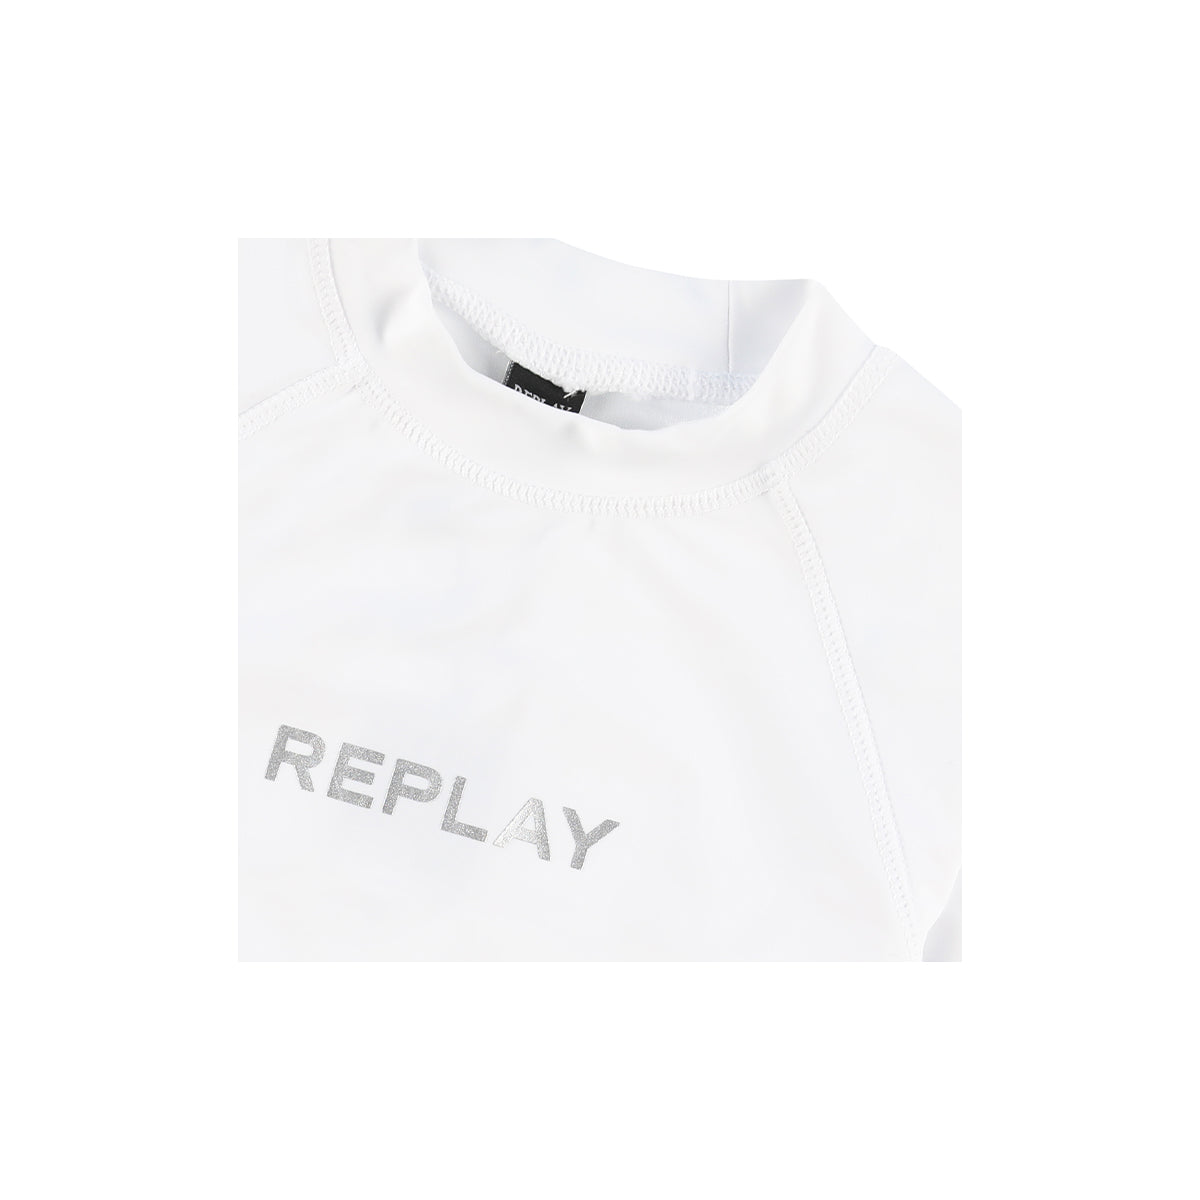 חולצת  בגד ים REPLAY לוגו מותג באמצע לילדים